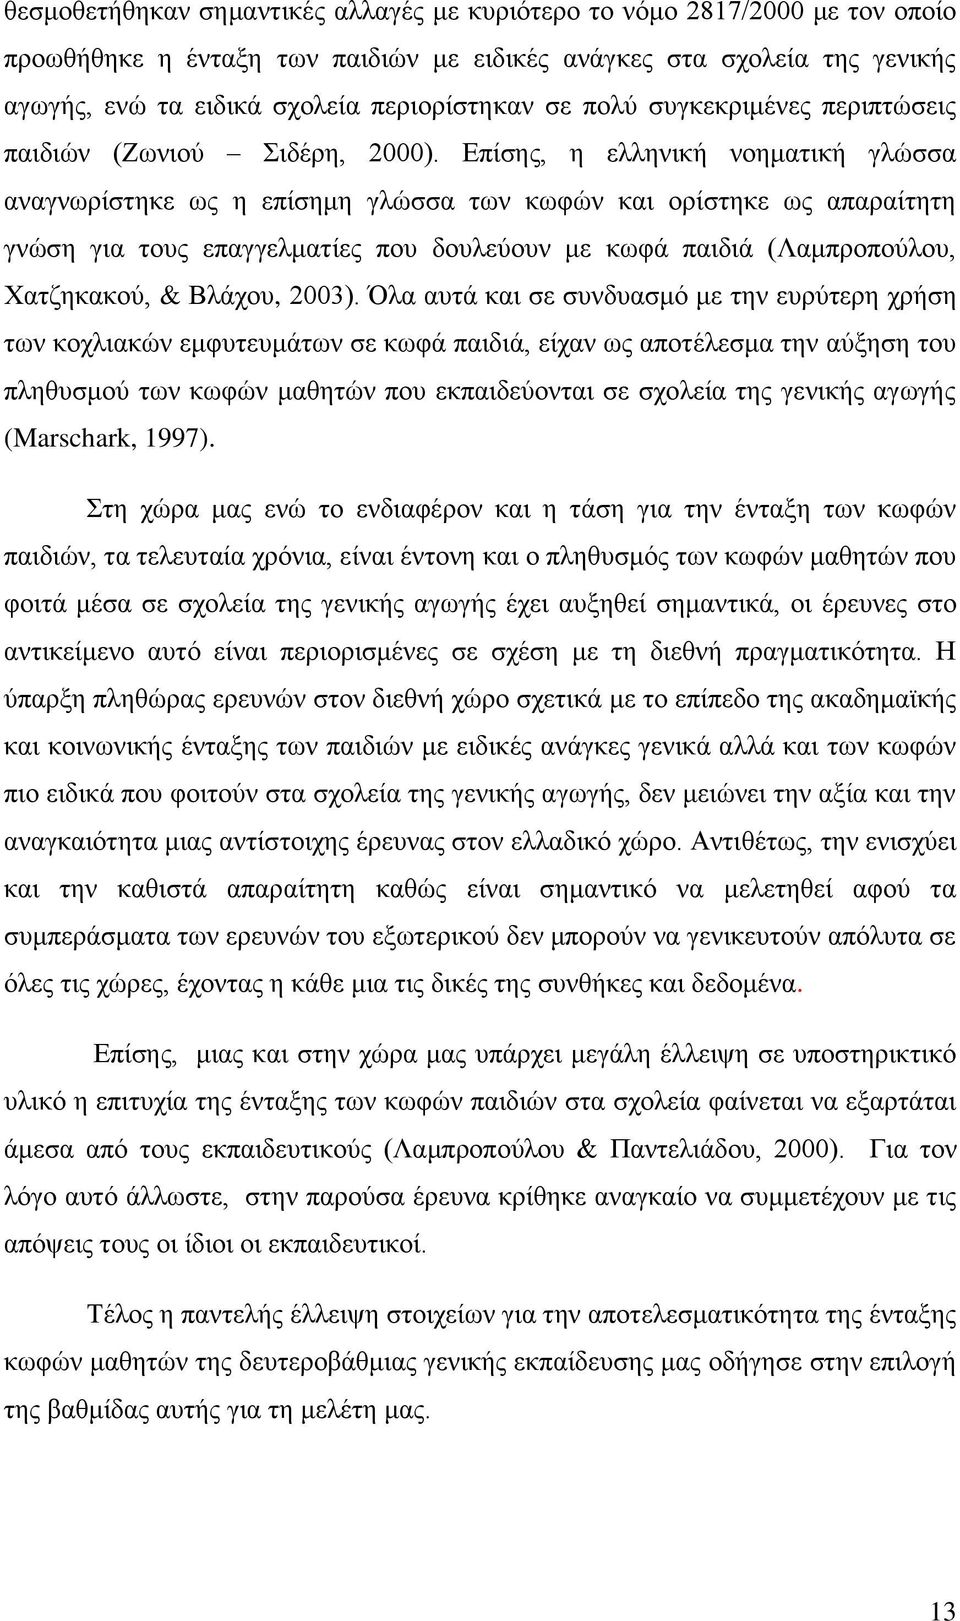 Επίσης, η ελληνική νοηματική γλώσσα αναγνωρίστηκε ως η επίσημη γλώσσα των κωφών και ορίστηκε ως απαραίτητη γνώση για τους επαγγελματίες που δουλεύουν με κωφά παιδιά (Λαμπροπούλου, Χατζηκακού, &